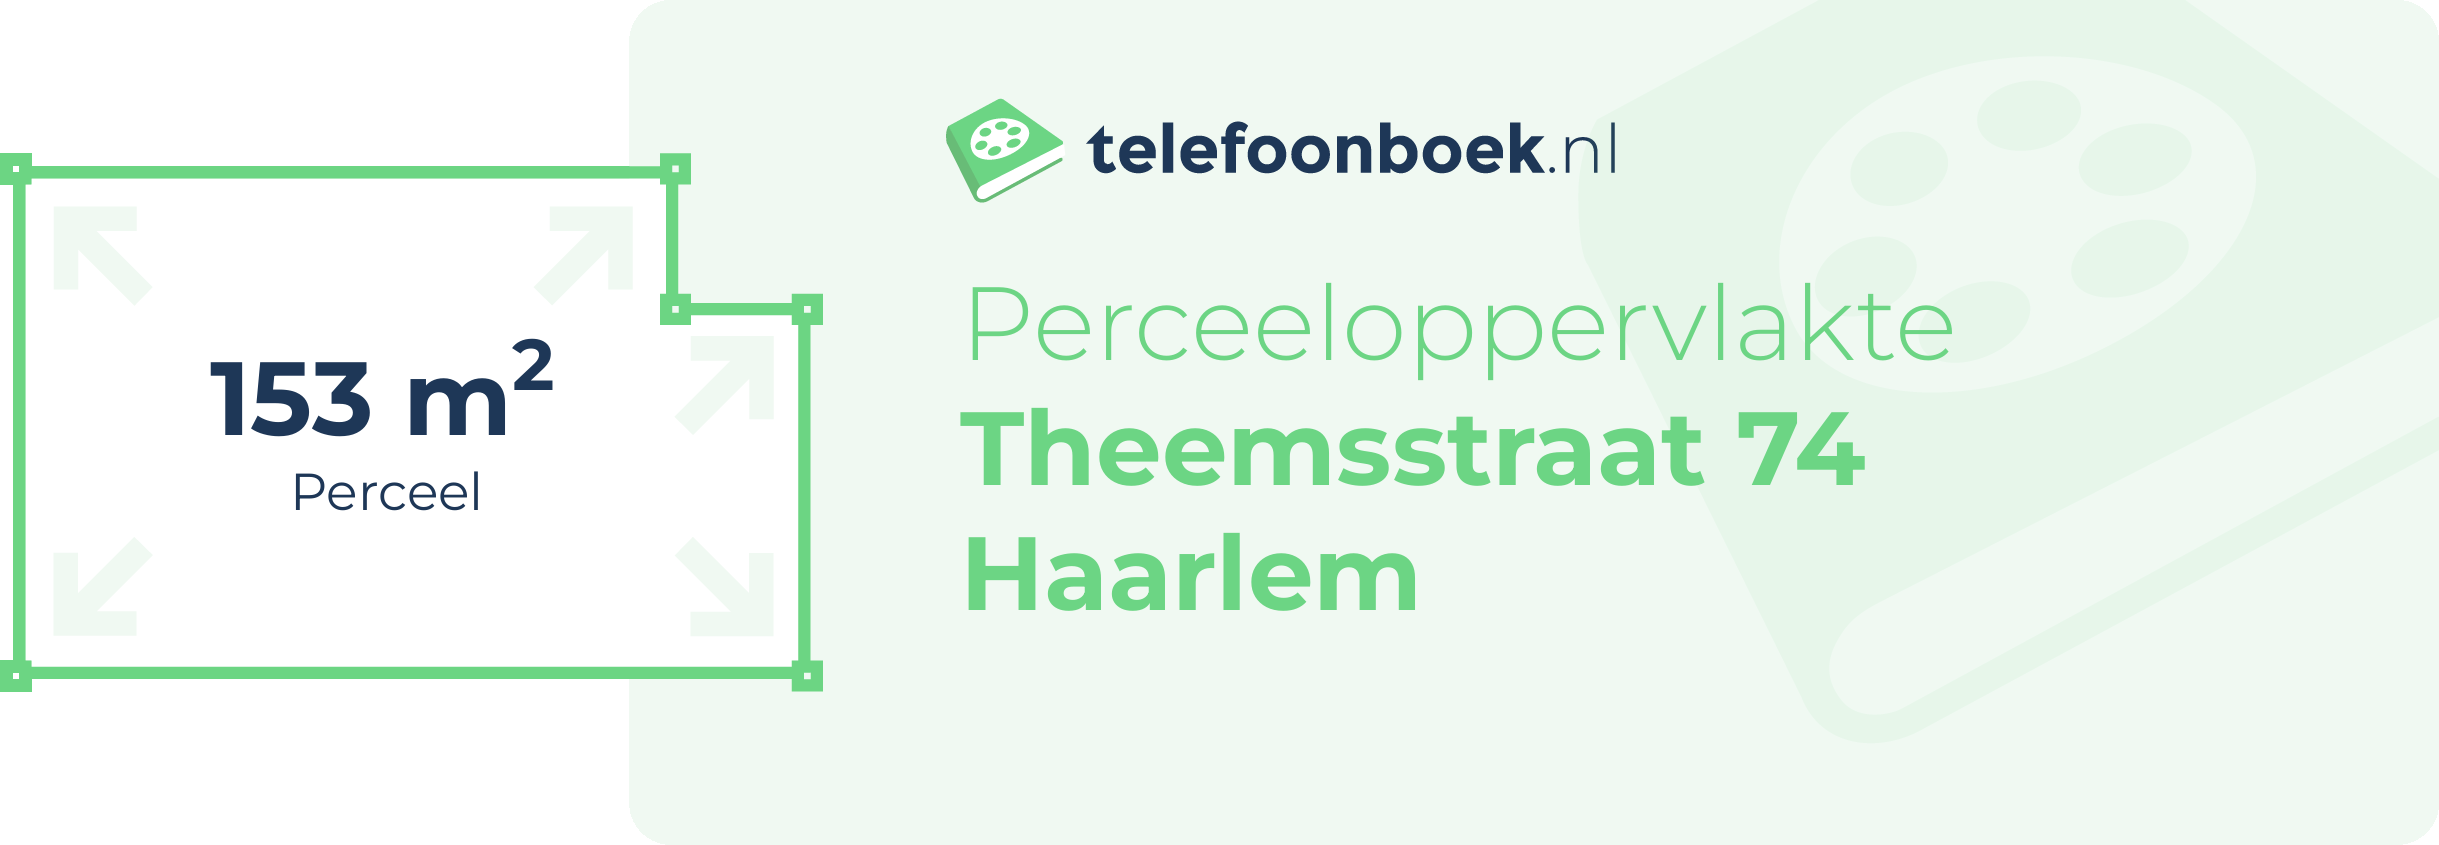 Perceeloppervlakte Theemsstraat 74 Haarlem